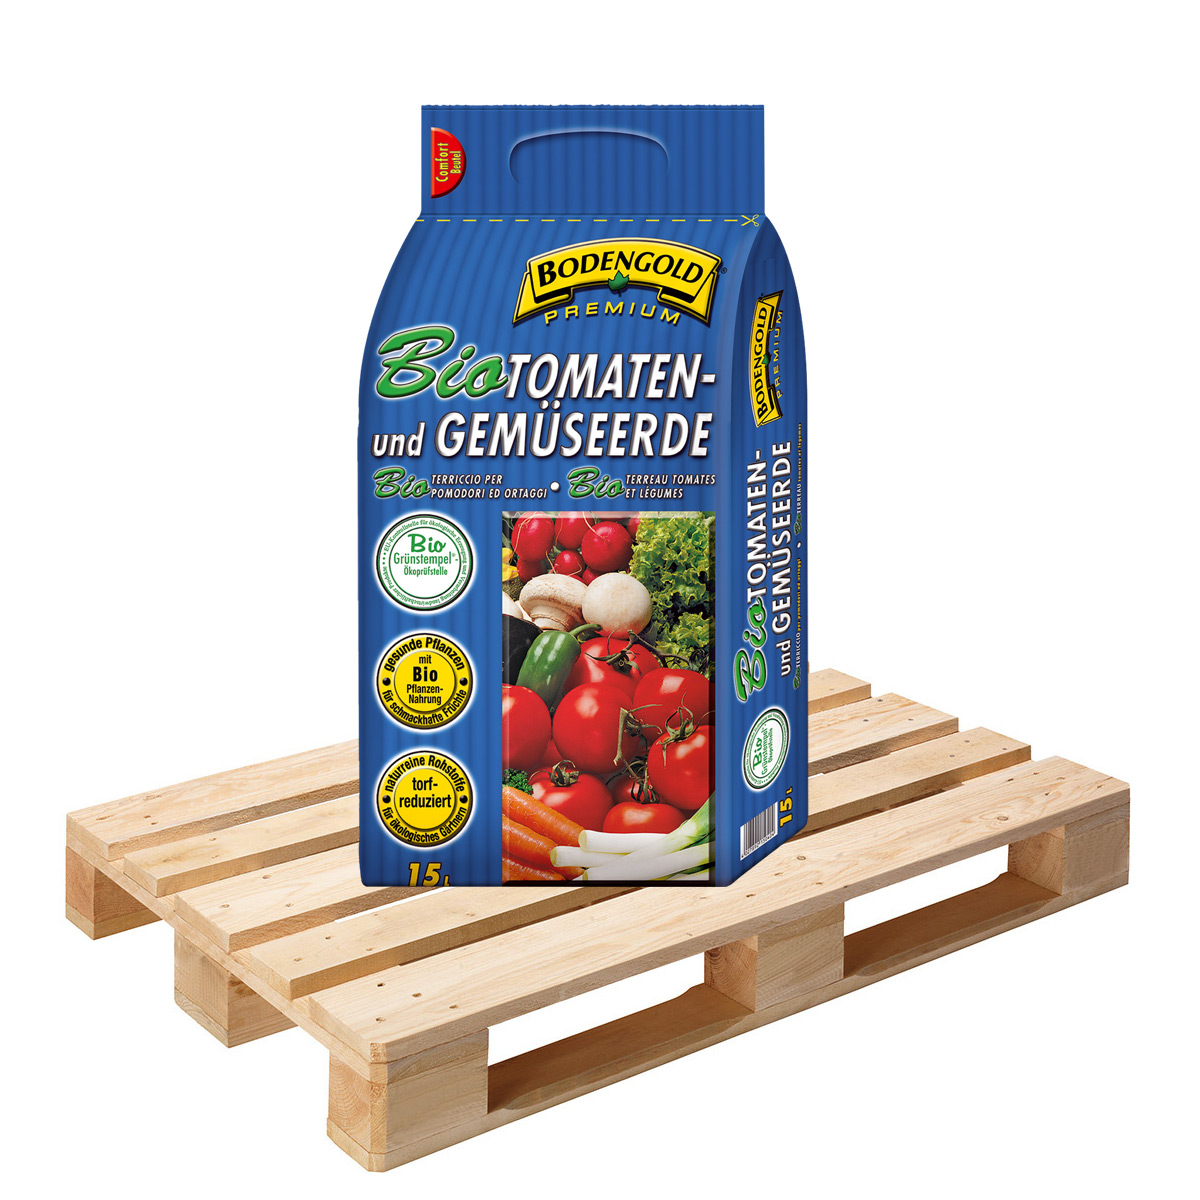 BODENGOLD Premium BIO Tomaten- und Gemüseerde 54 Sack á 15 L